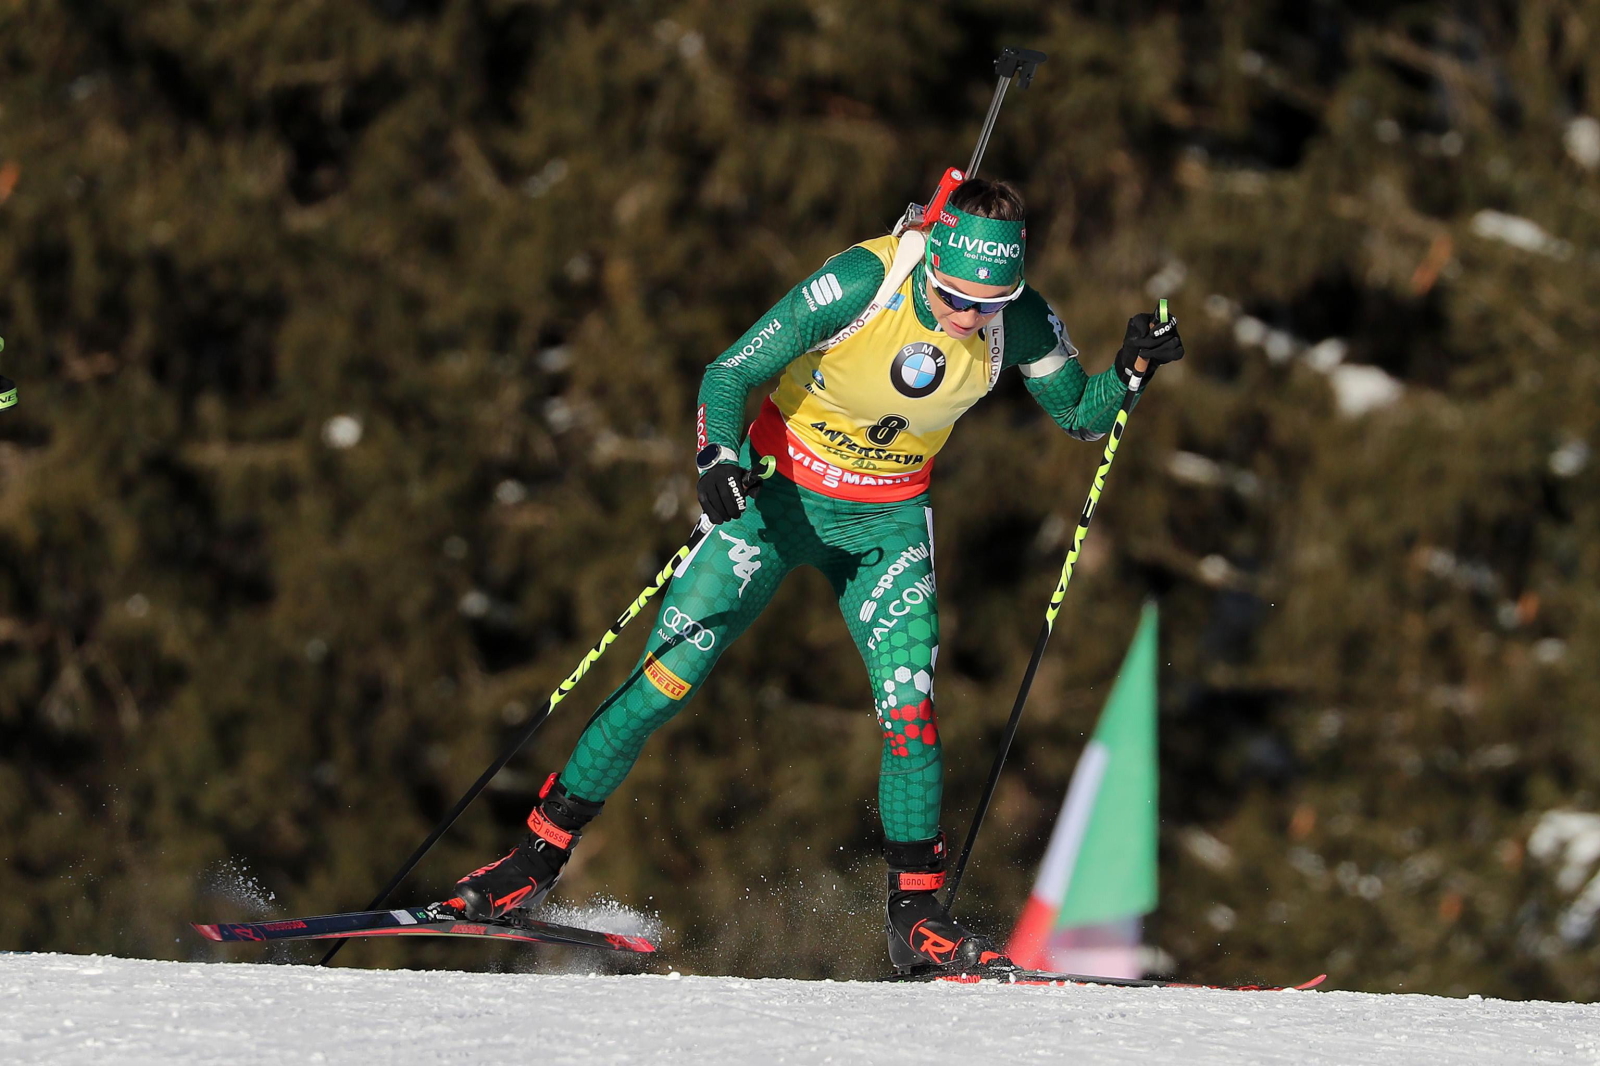 Włoszka Dorota wierer podczas Pucharu Świata w biathlonie w Antholz-Anterselva, Włochy. Fot. PAP/EPA/ANDREA SOLERO